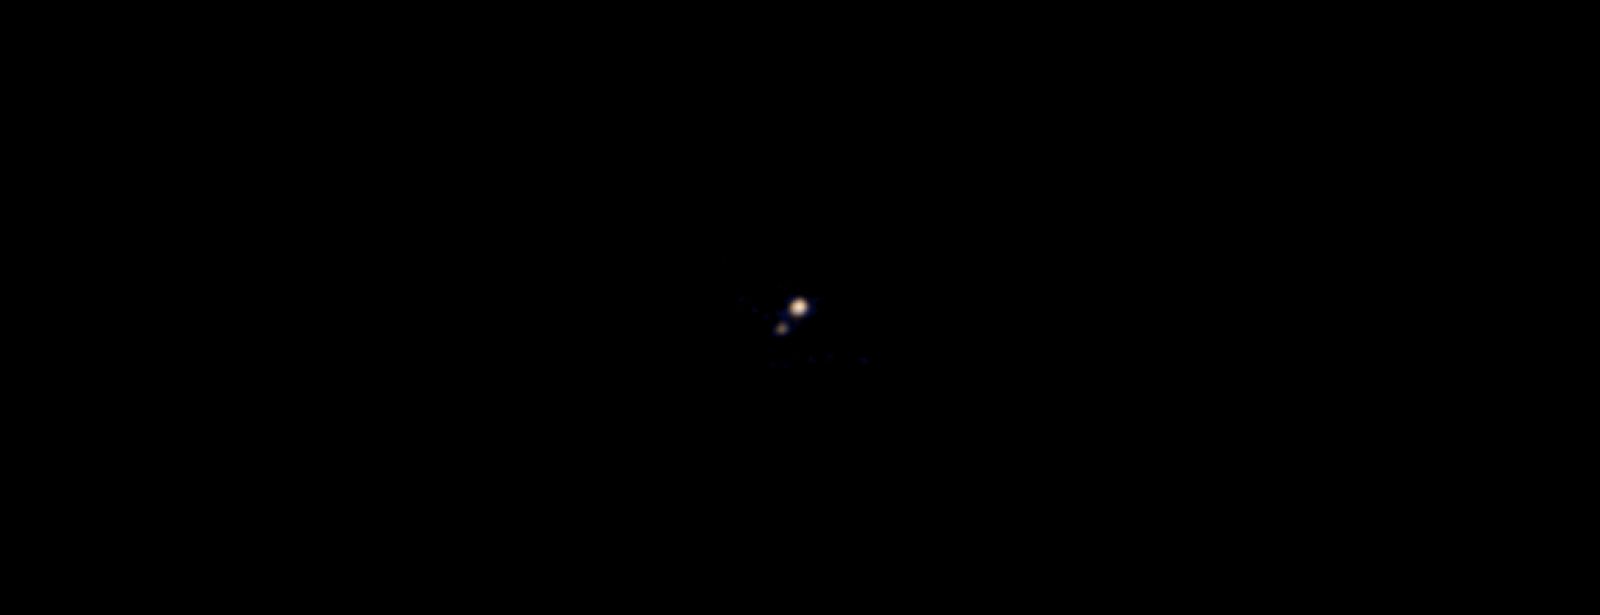 Primera imagen en color de Plutón de uno de sus cinco satélites, Caronte.